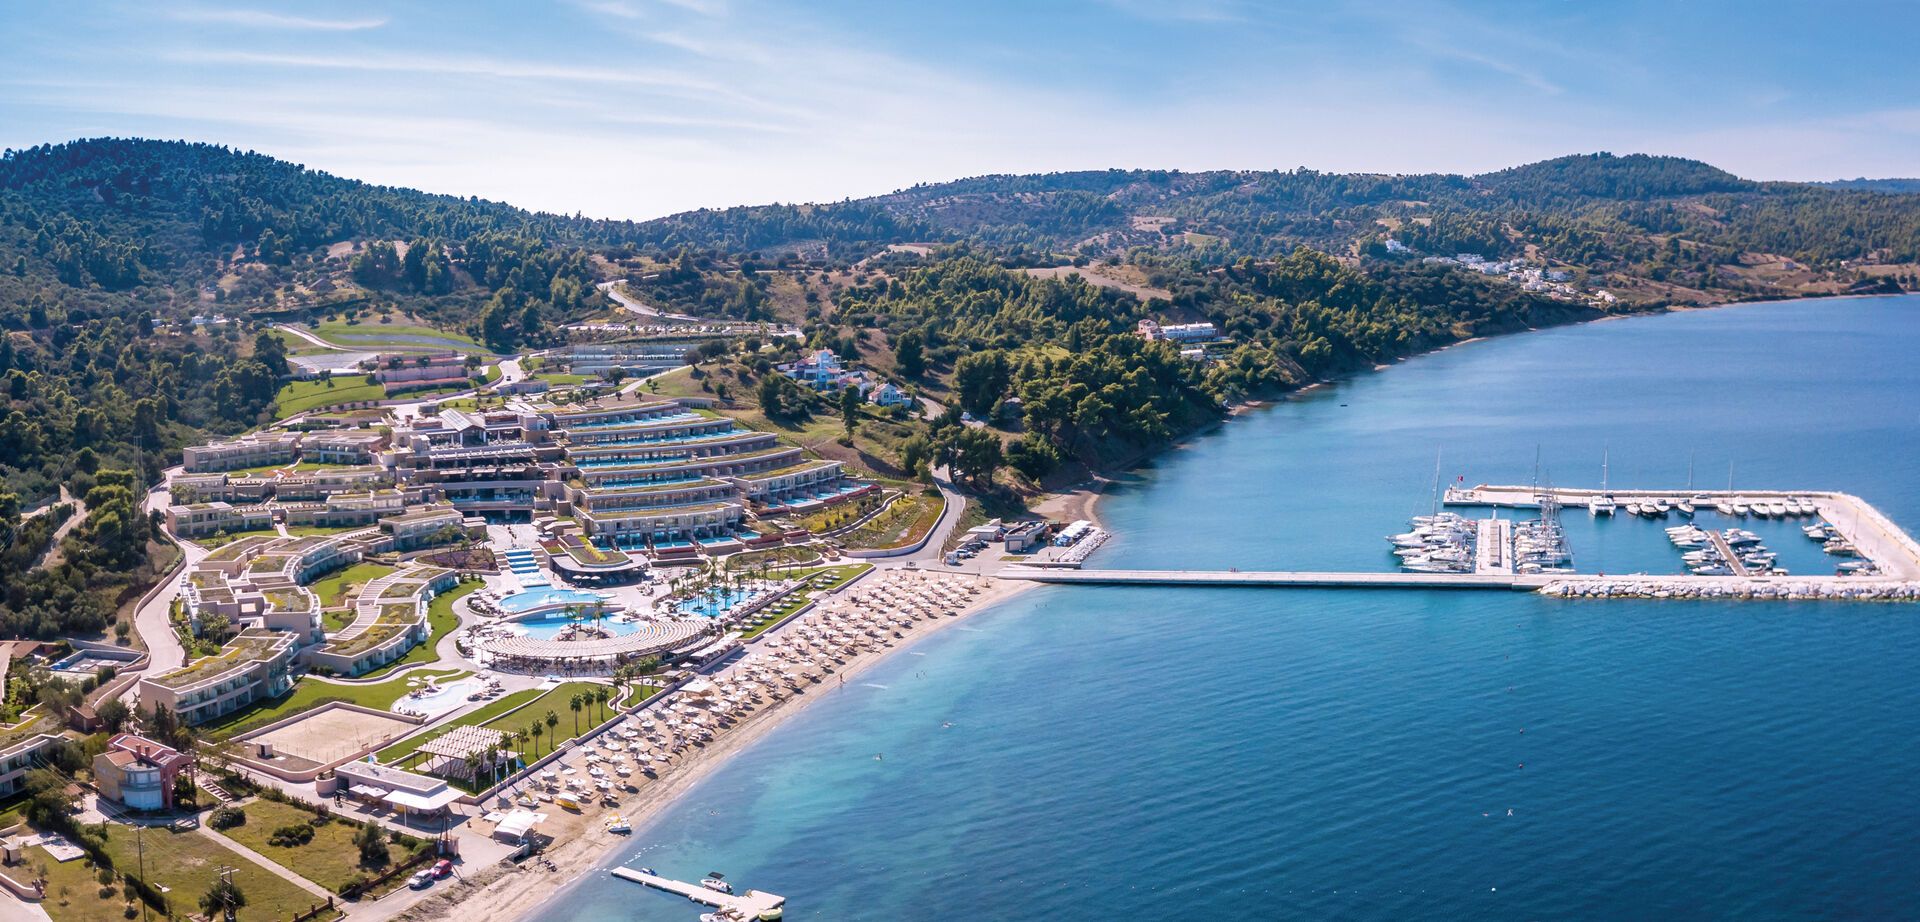 Miraggio Thermal Spa Resort - Eine Oase des Luxus & der Erholung